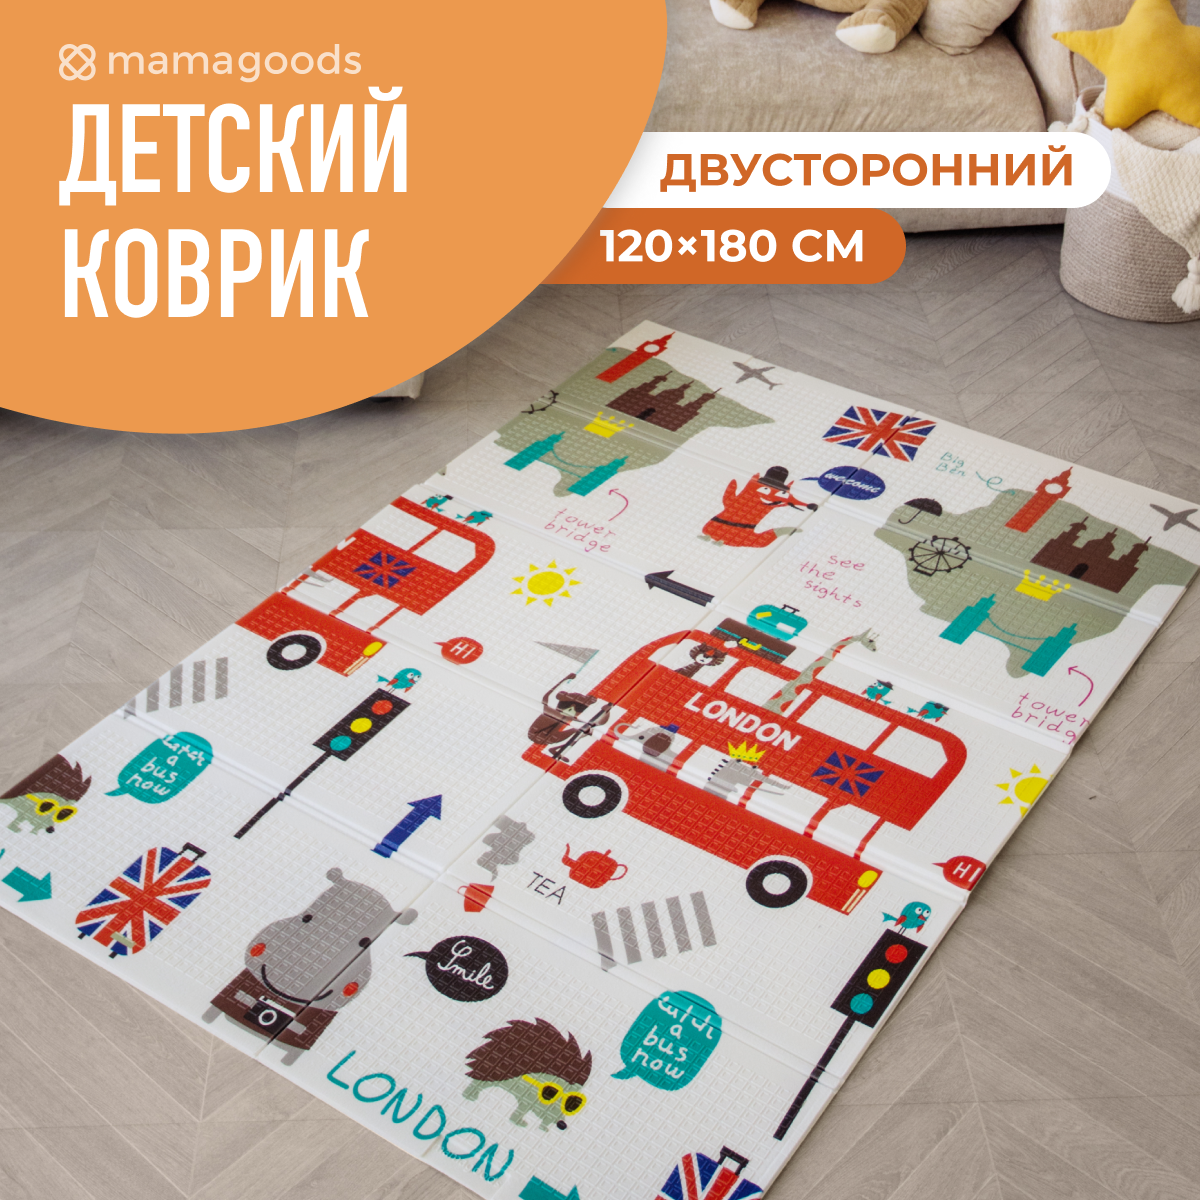 Развивающий коврик детский Mamagoods для ползания складной игровой 120х180 см Город и Лондонский автобус - фото 1